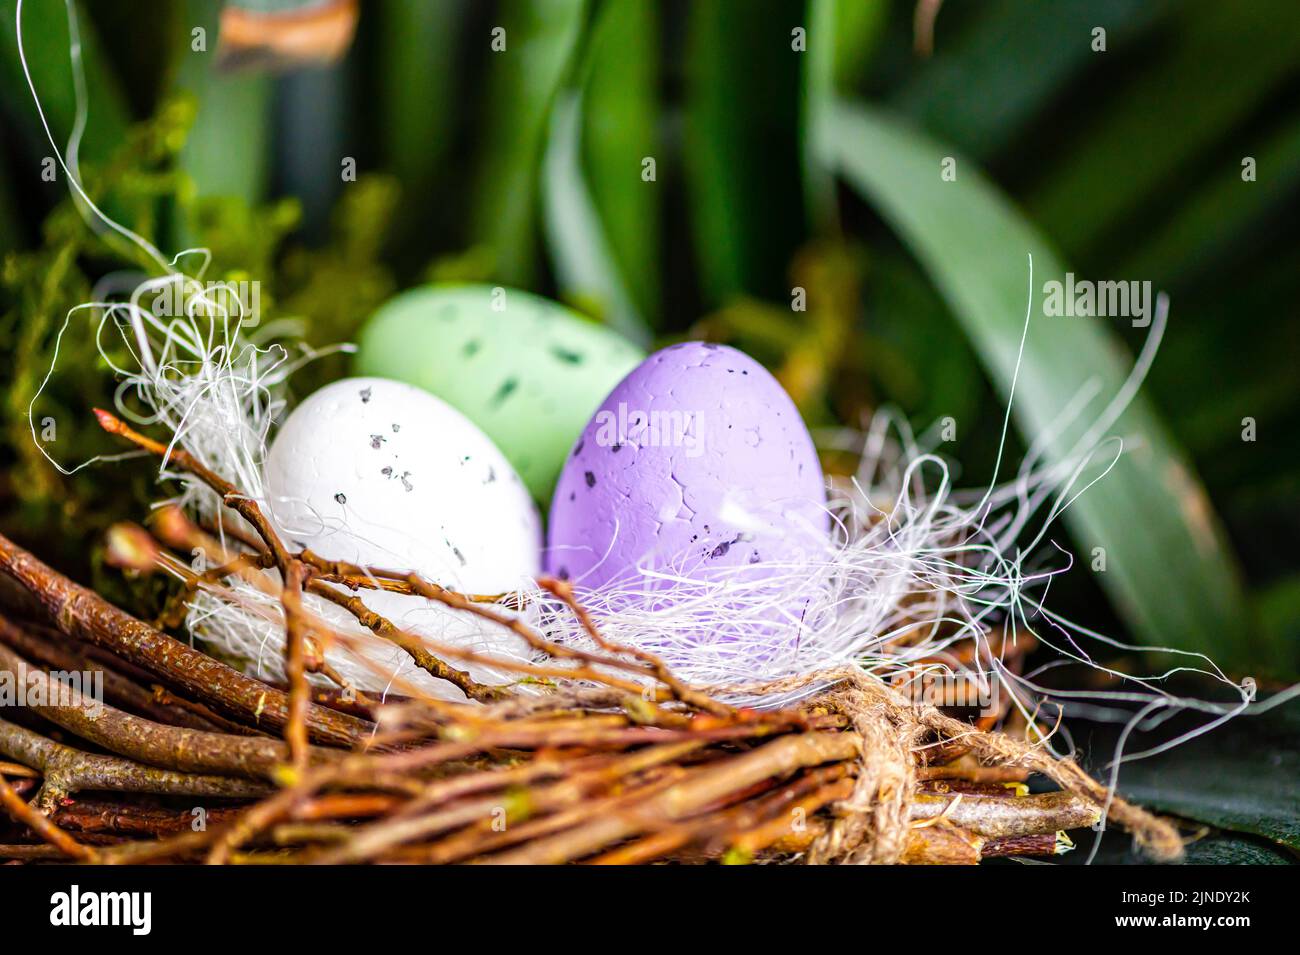 Nid d'oiseau avec des oeufs de Pâques colorés sur des branches d'arbres verts, décoration de pâques, foyer sélectif Banque D'Images